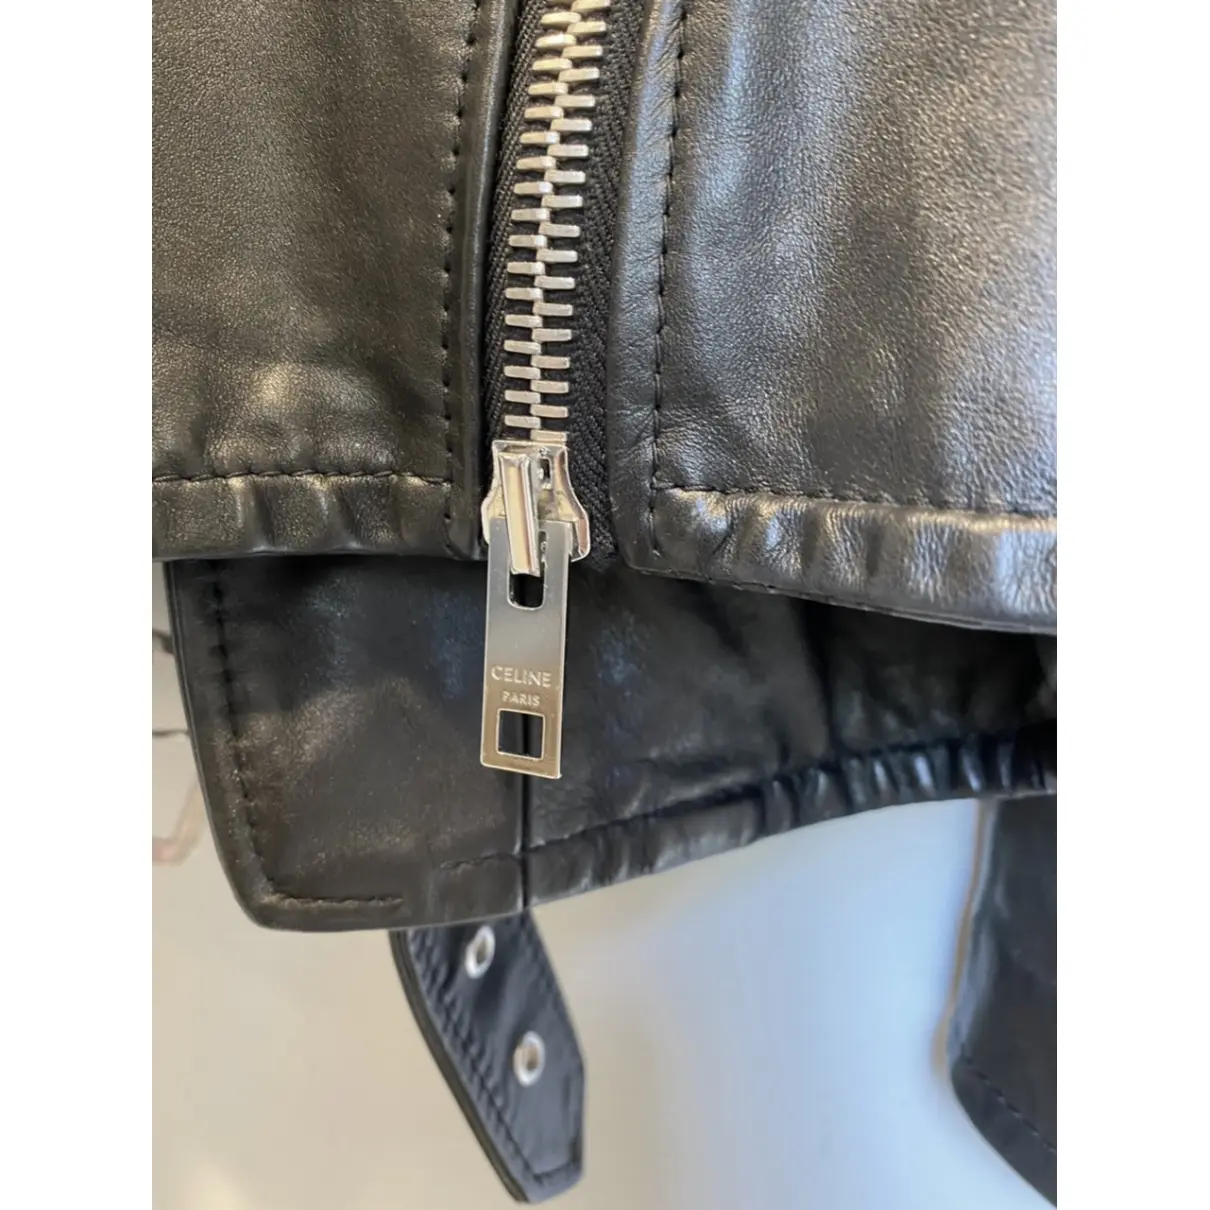 Buy Celine Leather jacket online - Vintage